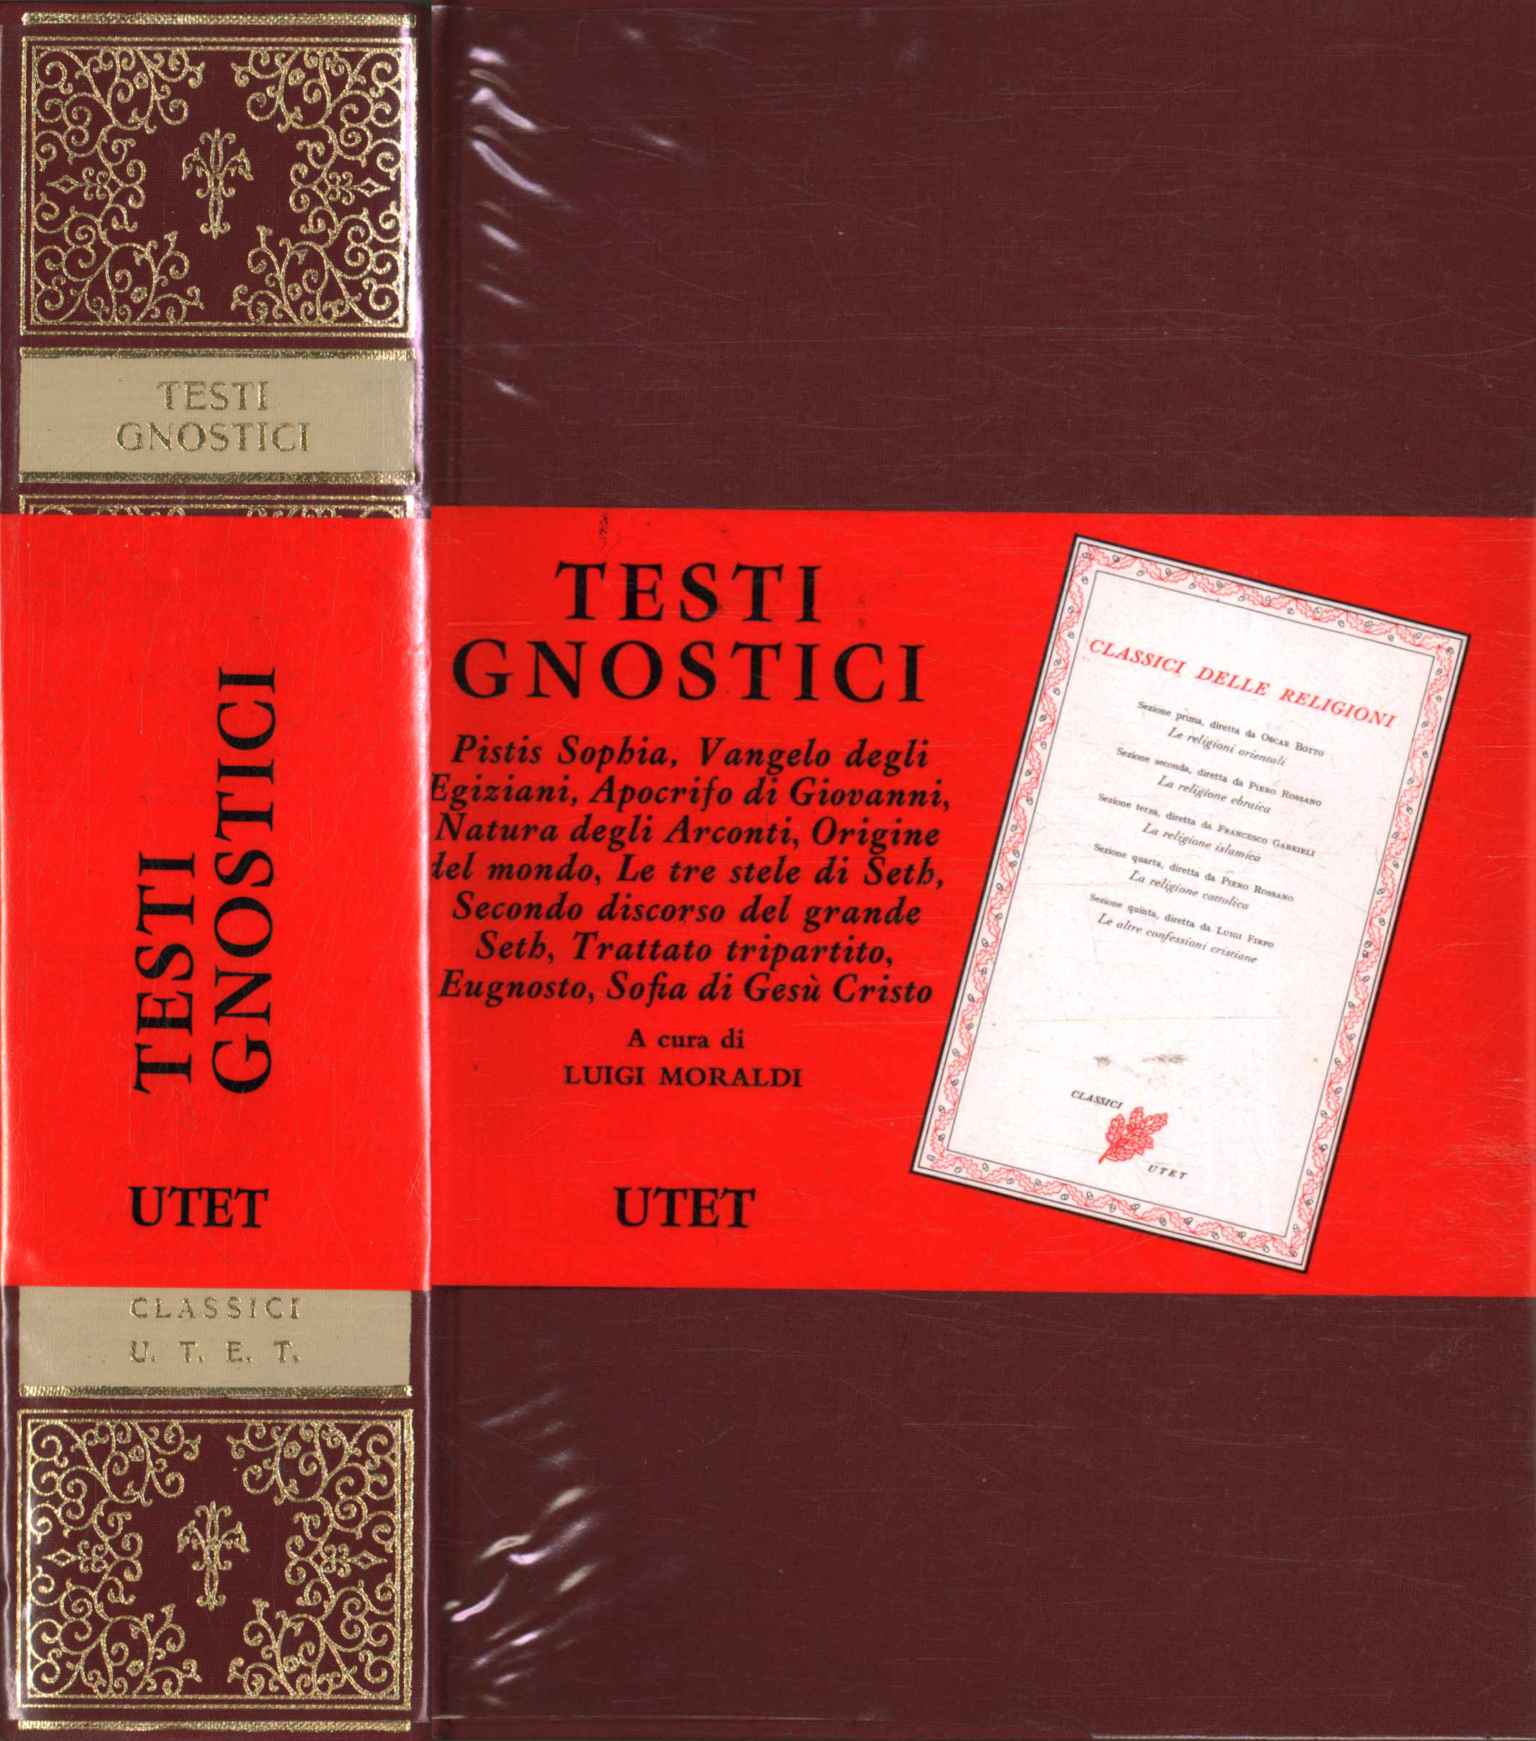 Gnostic texts